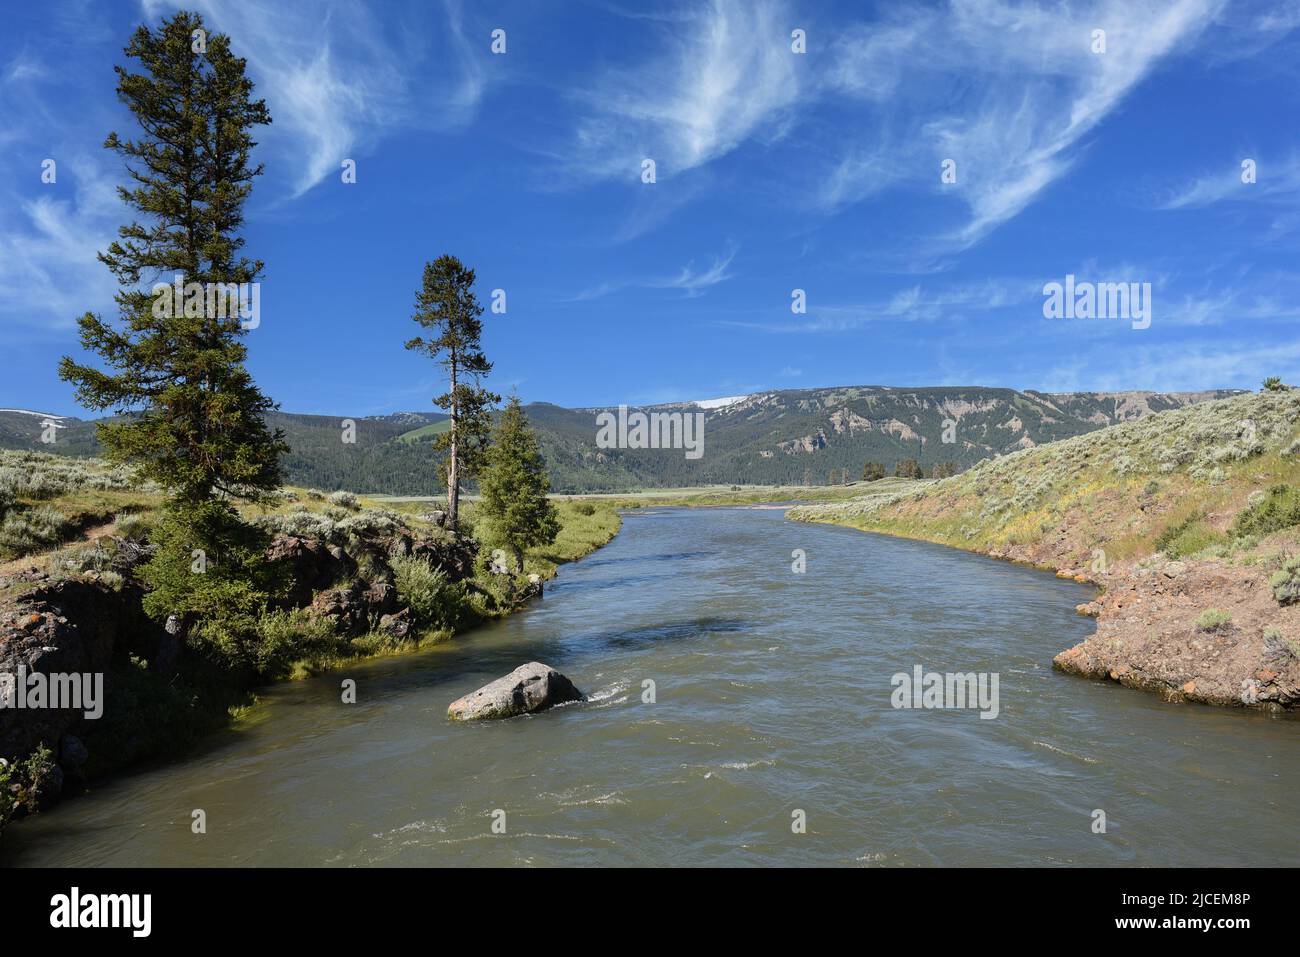 Il fiume Lamar è un affluente del fiume Yellowstone, lungo circa 40 miglia, nel Wyoming nord-occidentale. Foto Stock